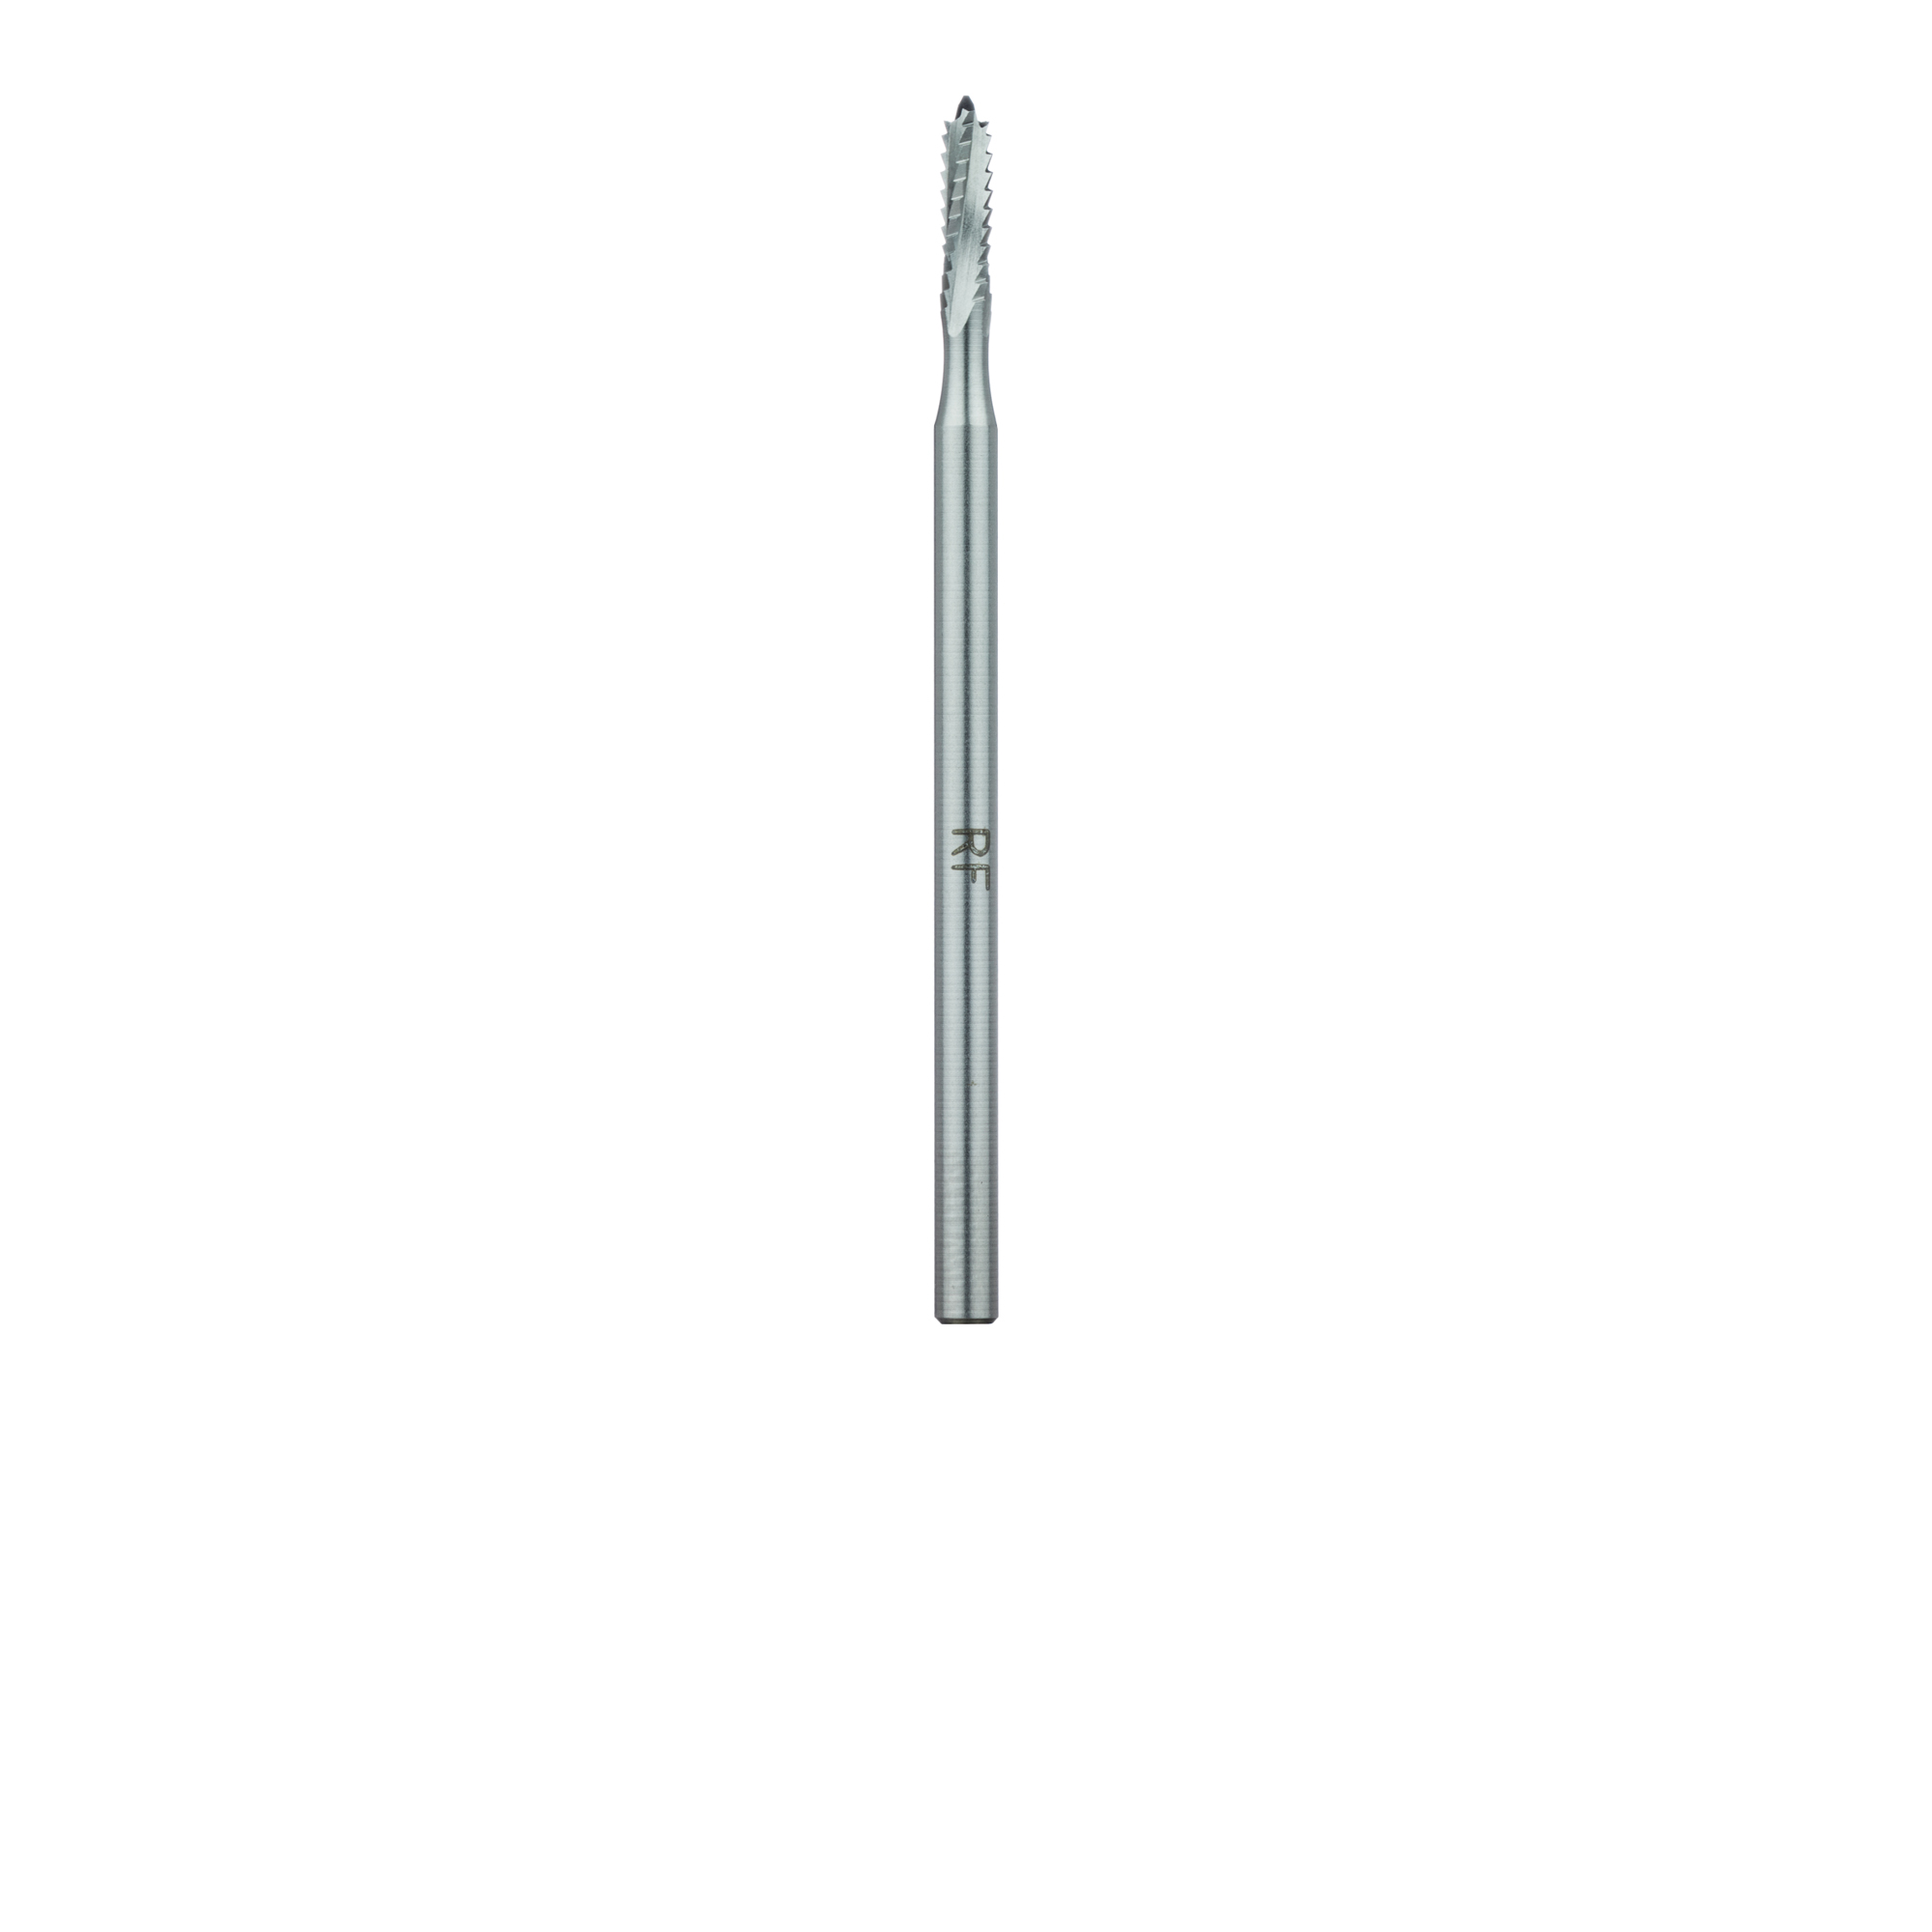 165RF-023-HP Steel Bur, Rust Free Stainless Steel Bur, 2.3mm, Cross Cut 7.0mm Length Lindemann Bur, HP